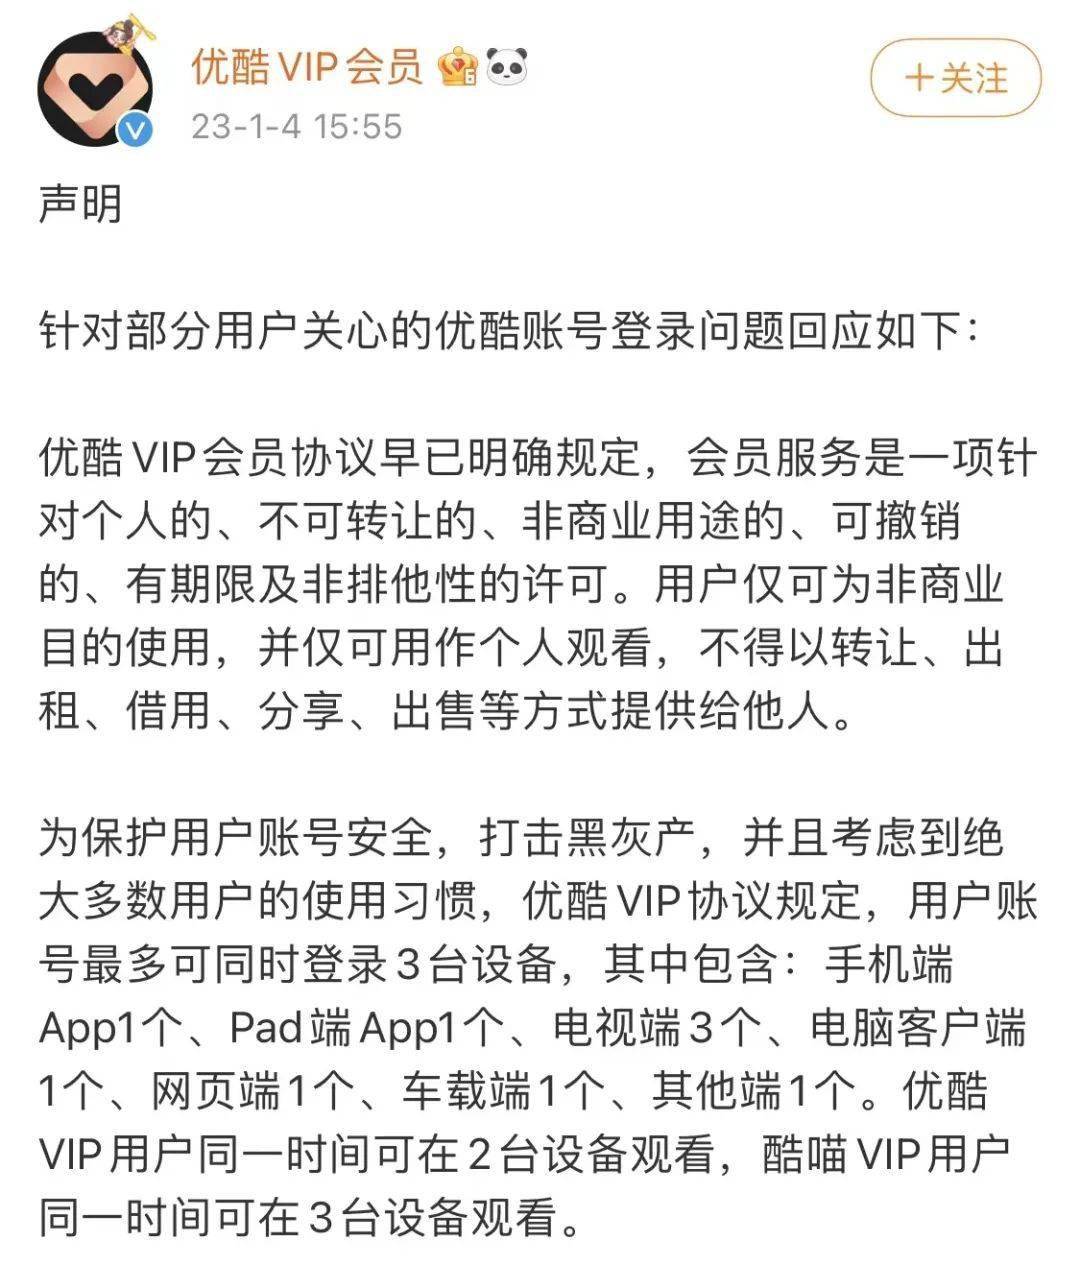 华为手机vip会员卡
:新年伊始，视频平台再次向共享账号“灰产”宣战